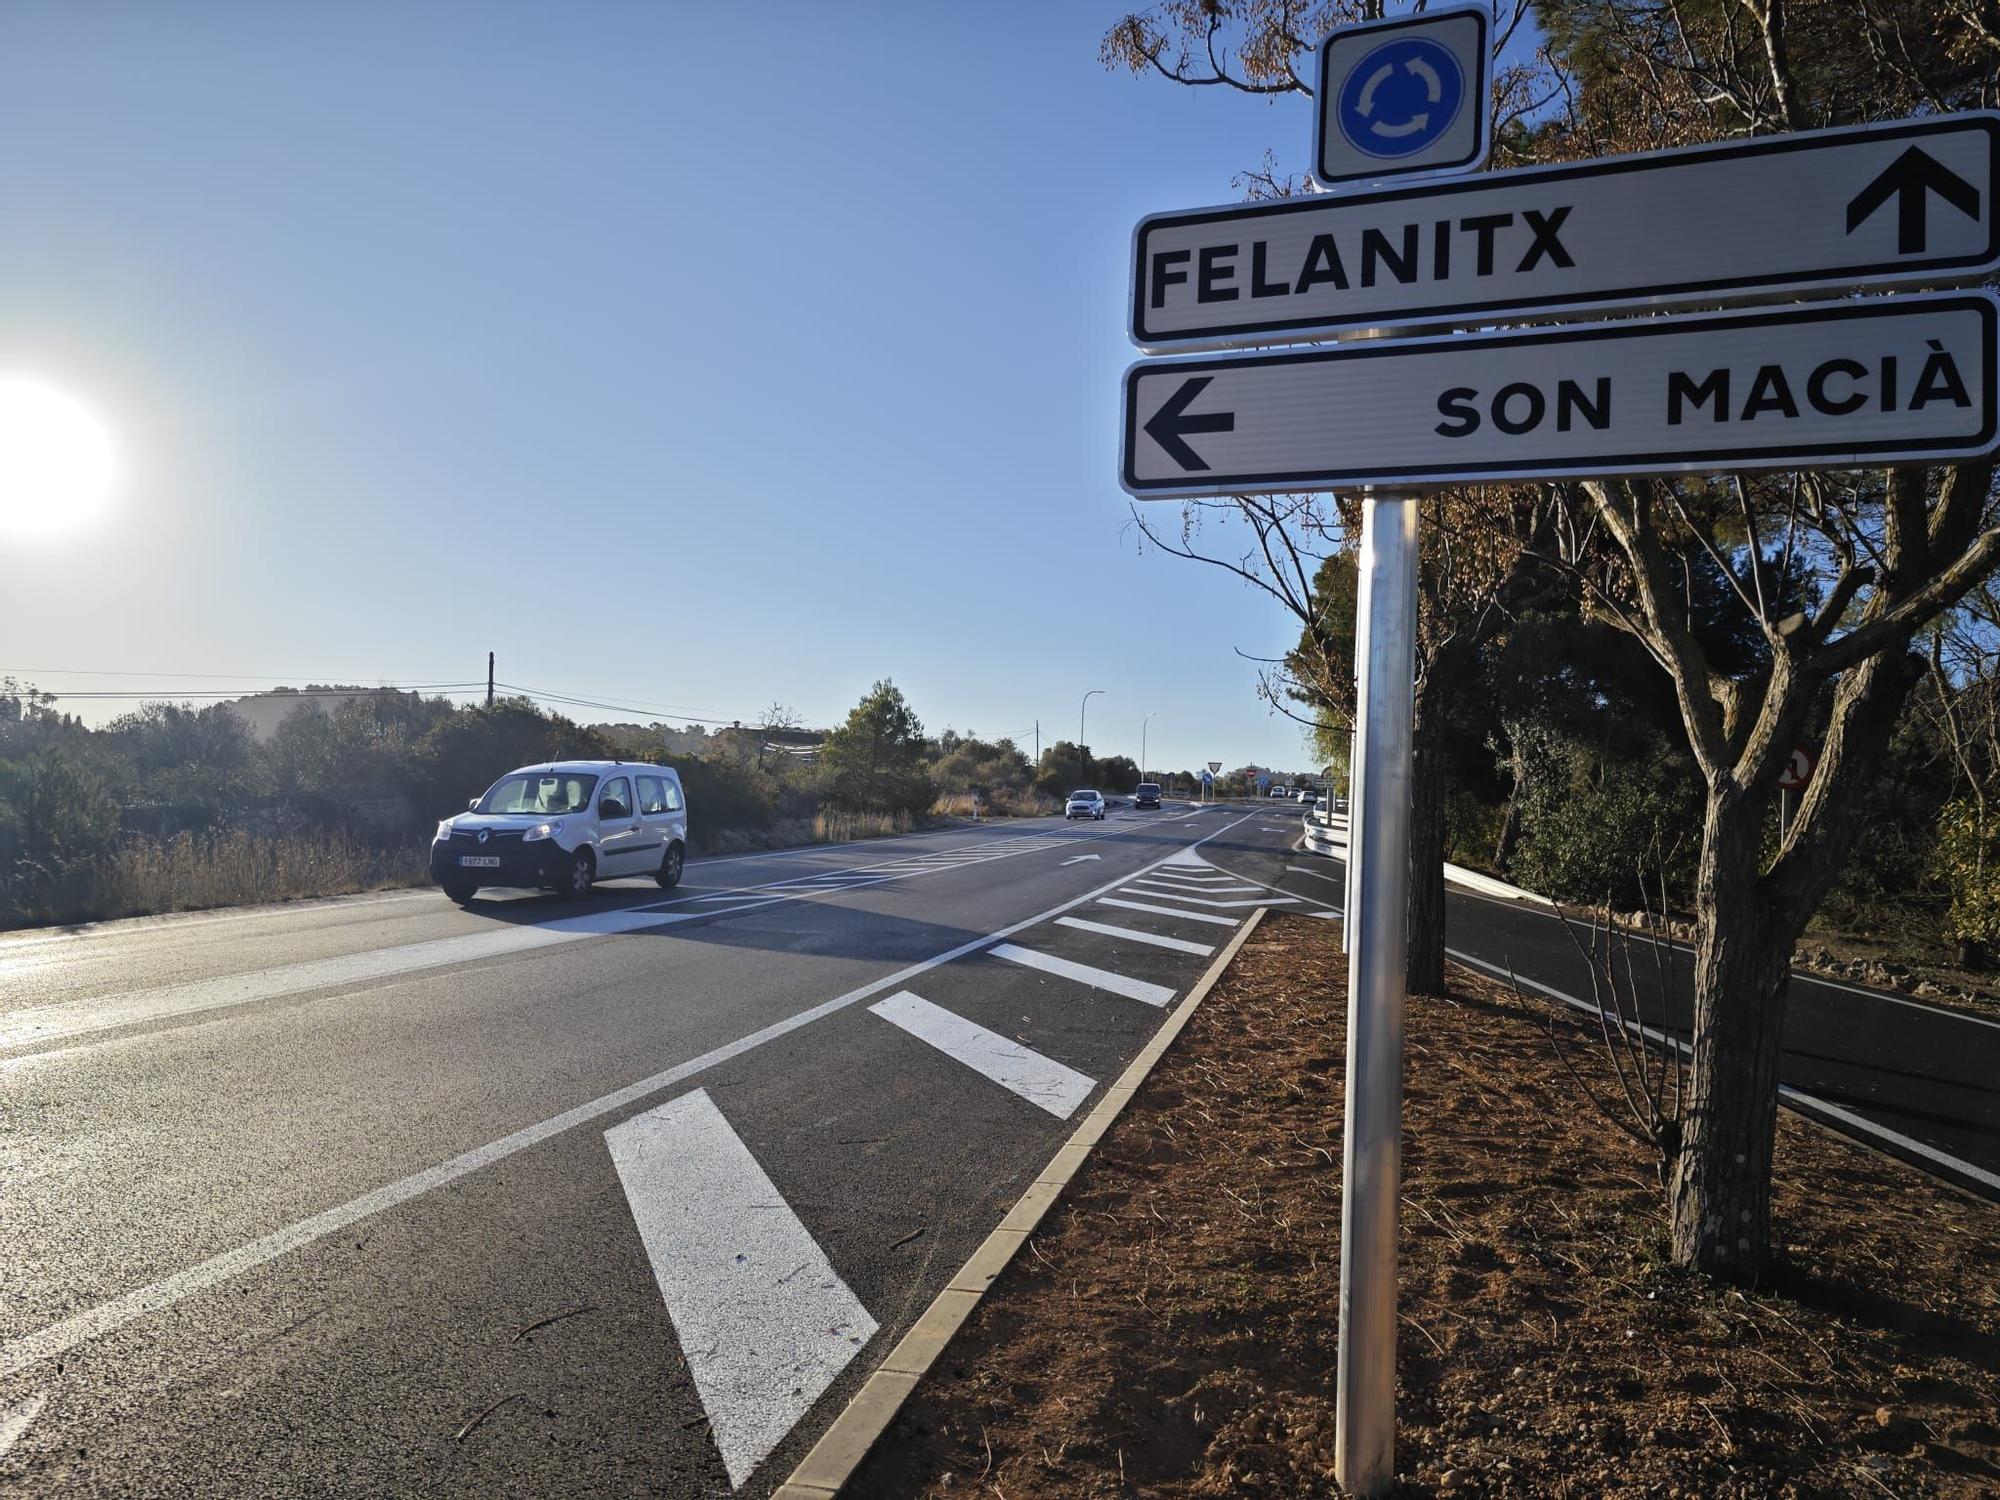 Fotos | La reforma de la carretera Manacor-Felanitx, en imágenes